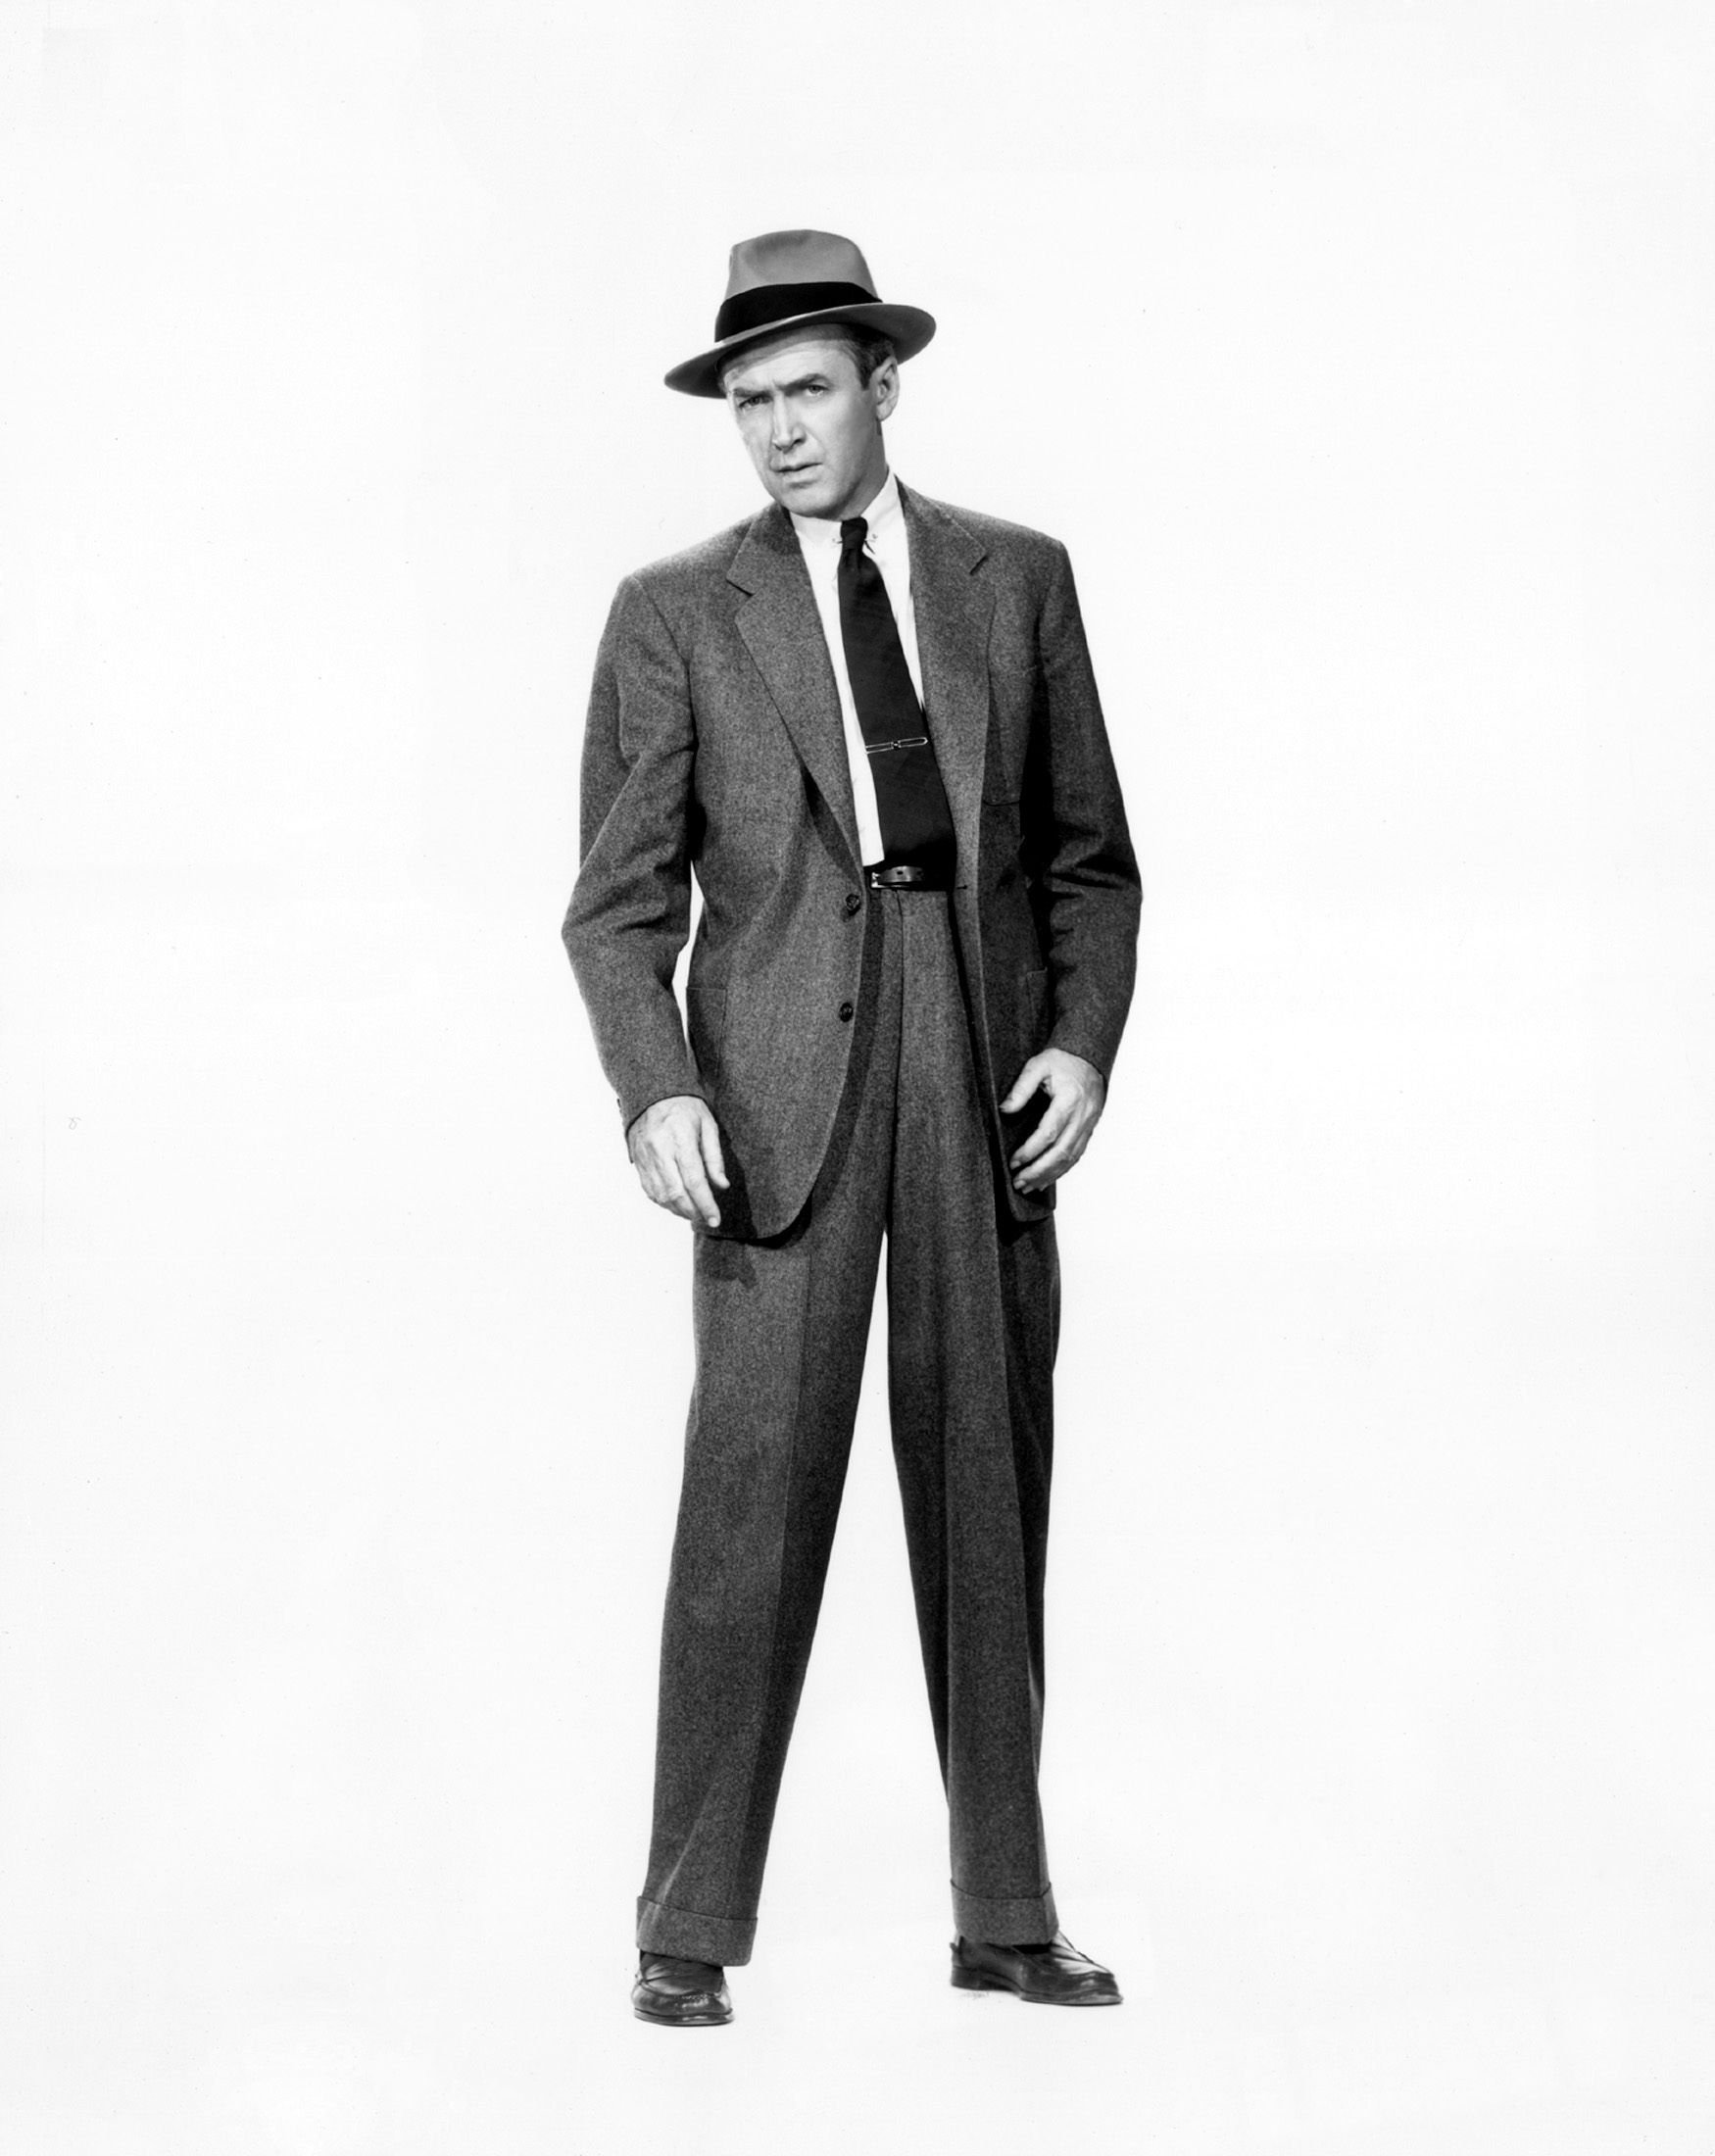 Хх мен. Мужской костюм 50-х годов. Мужской костюм в стиле ретро. Стиль 50-х годов в одежде мужчины. Костюмы 50х мужские.